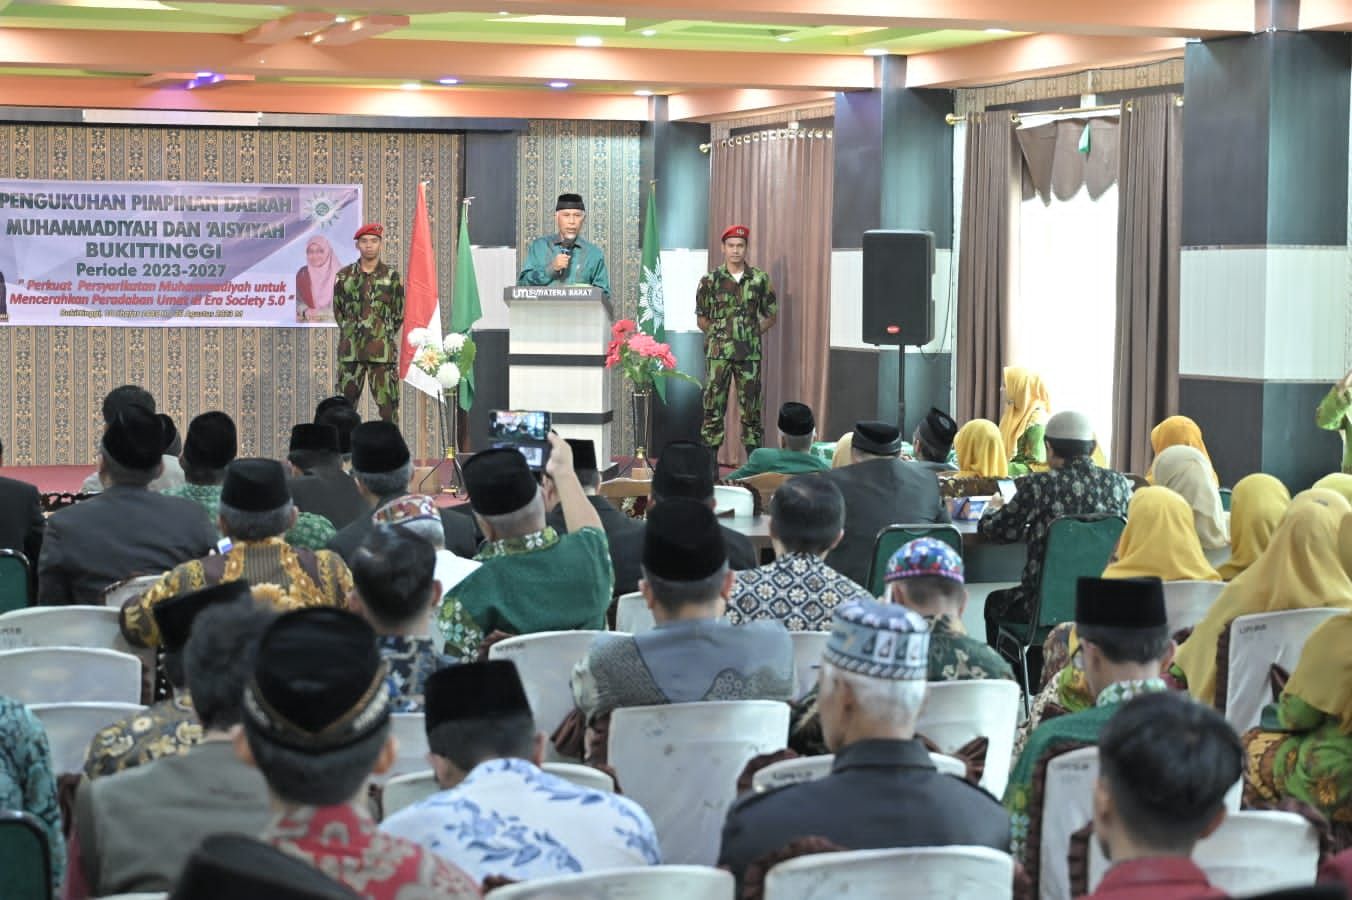 Suasana diacara pengukuhan Pimpinan Daearah Muhammadiyah di Kota Bukittinggi (gambar Warman)